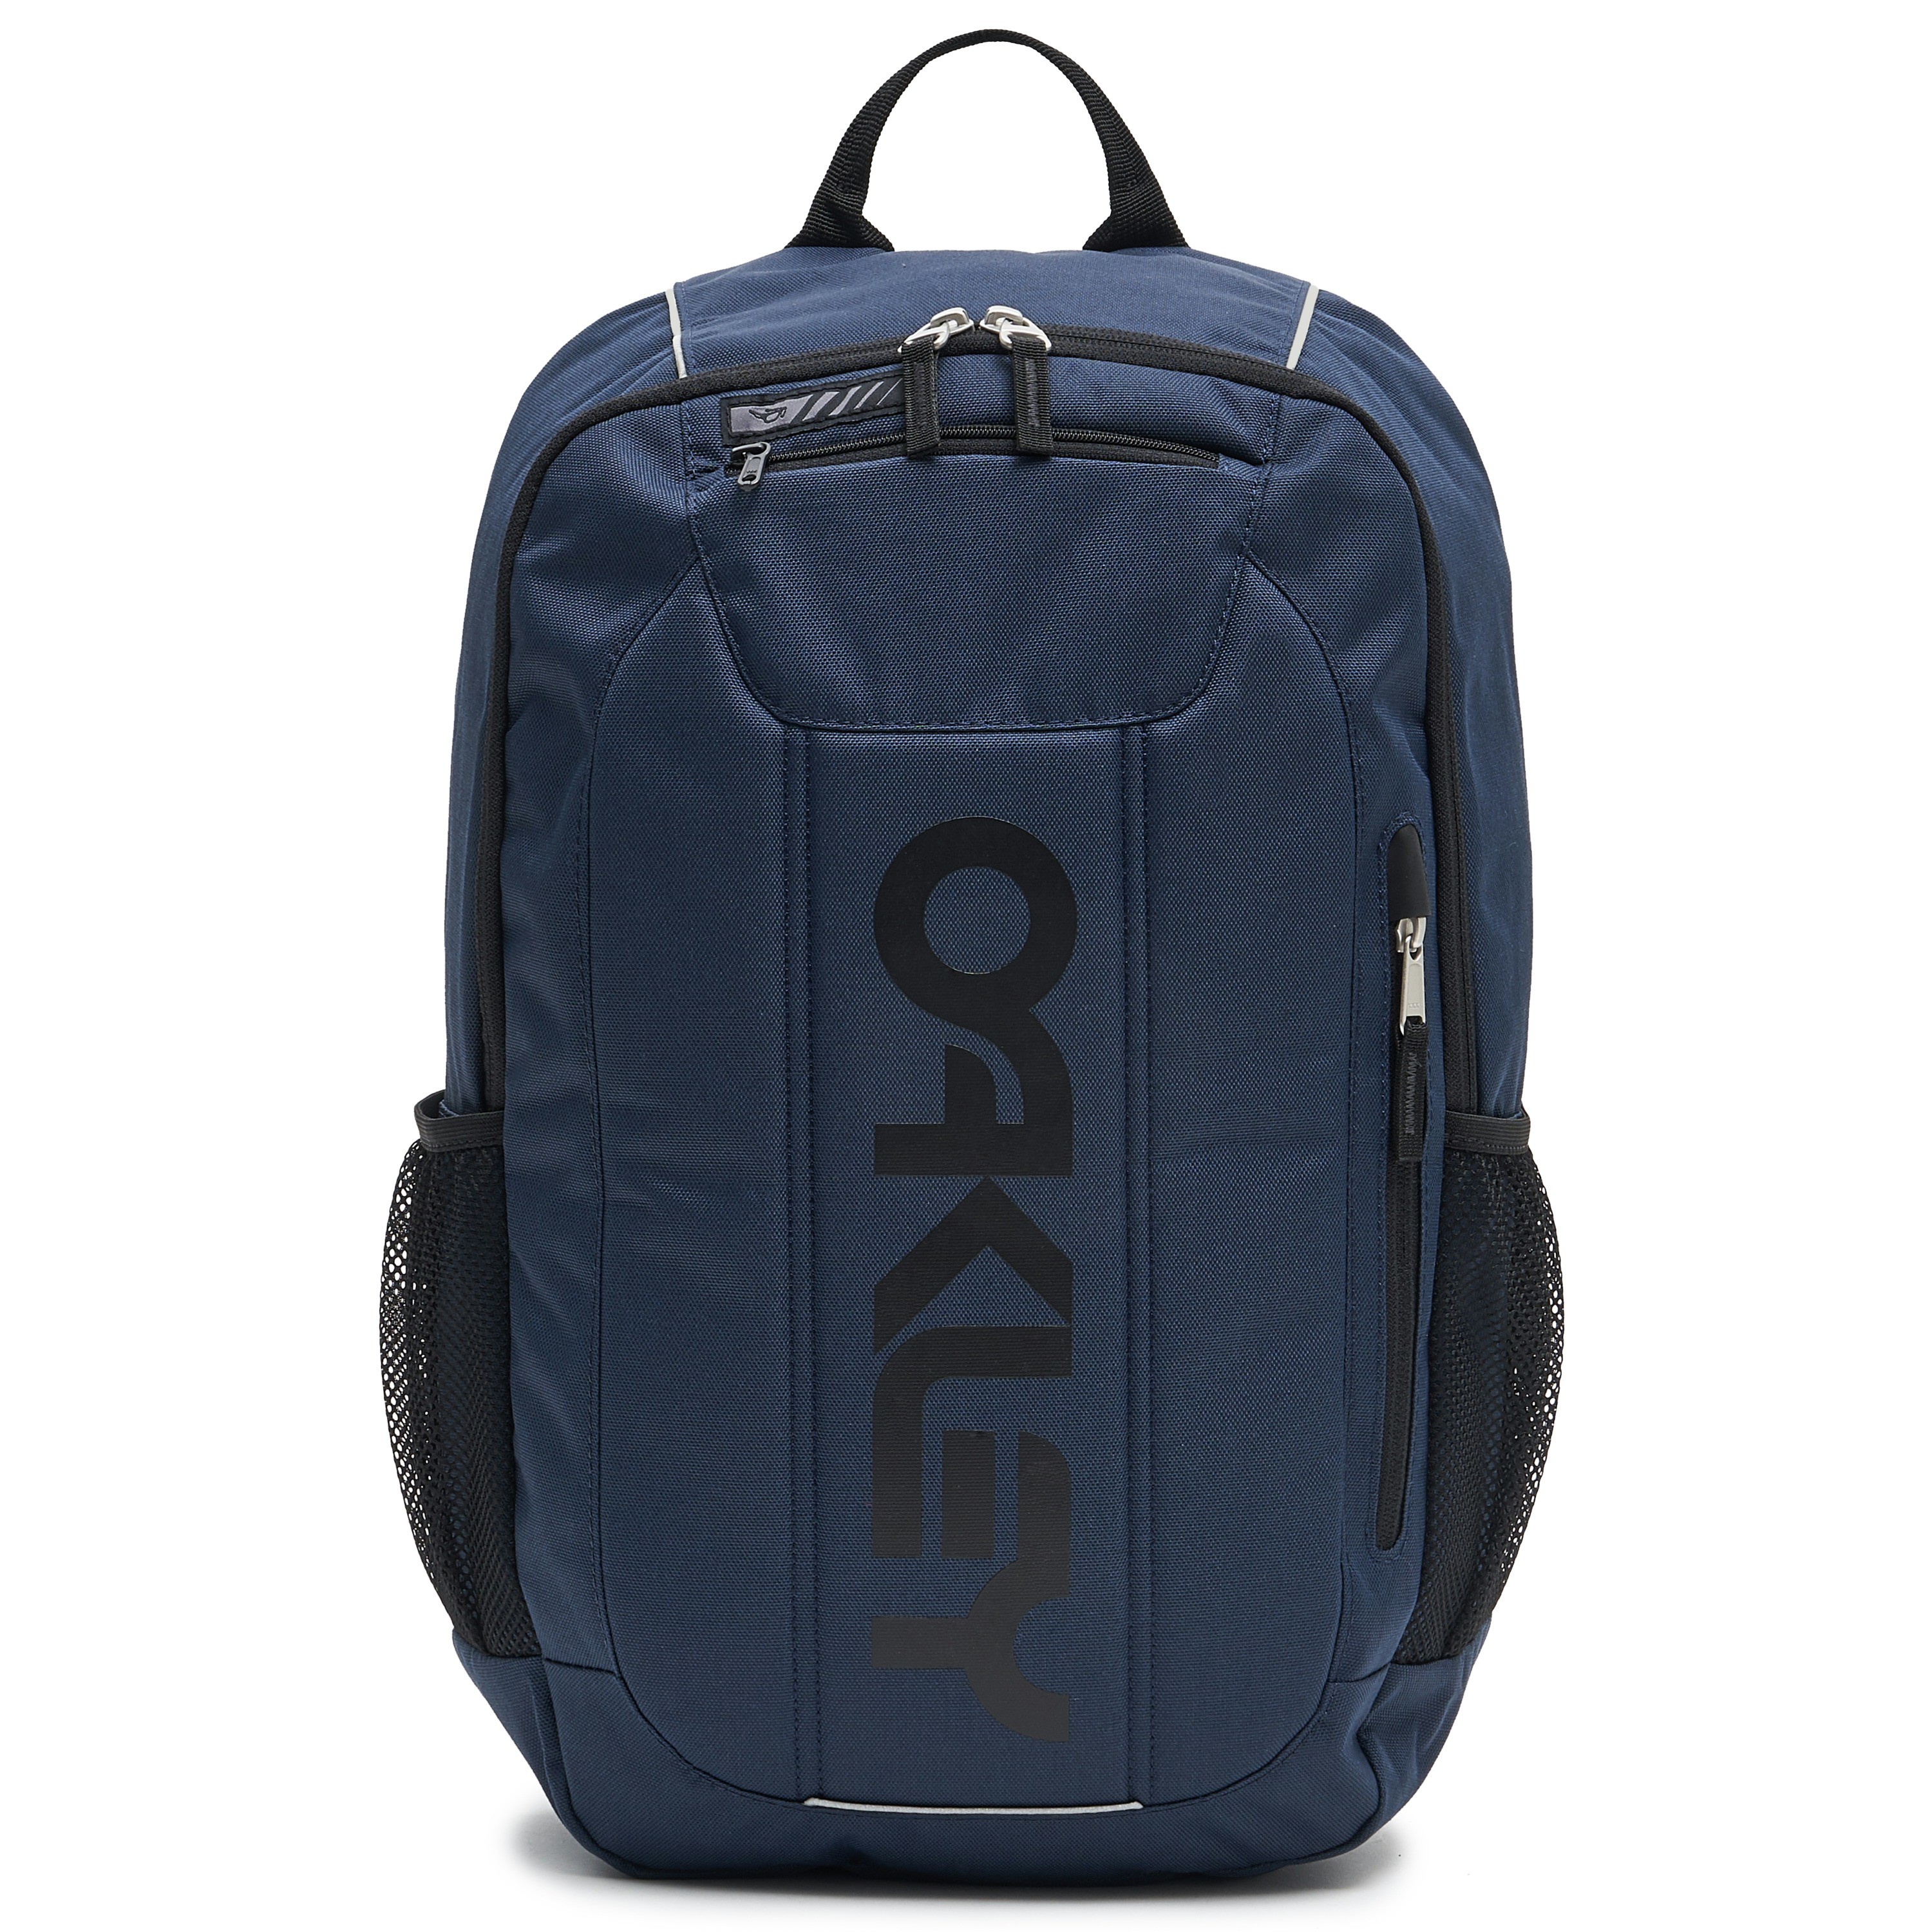 Oakley enduro 3.0 rugzak 20L foggy blauw